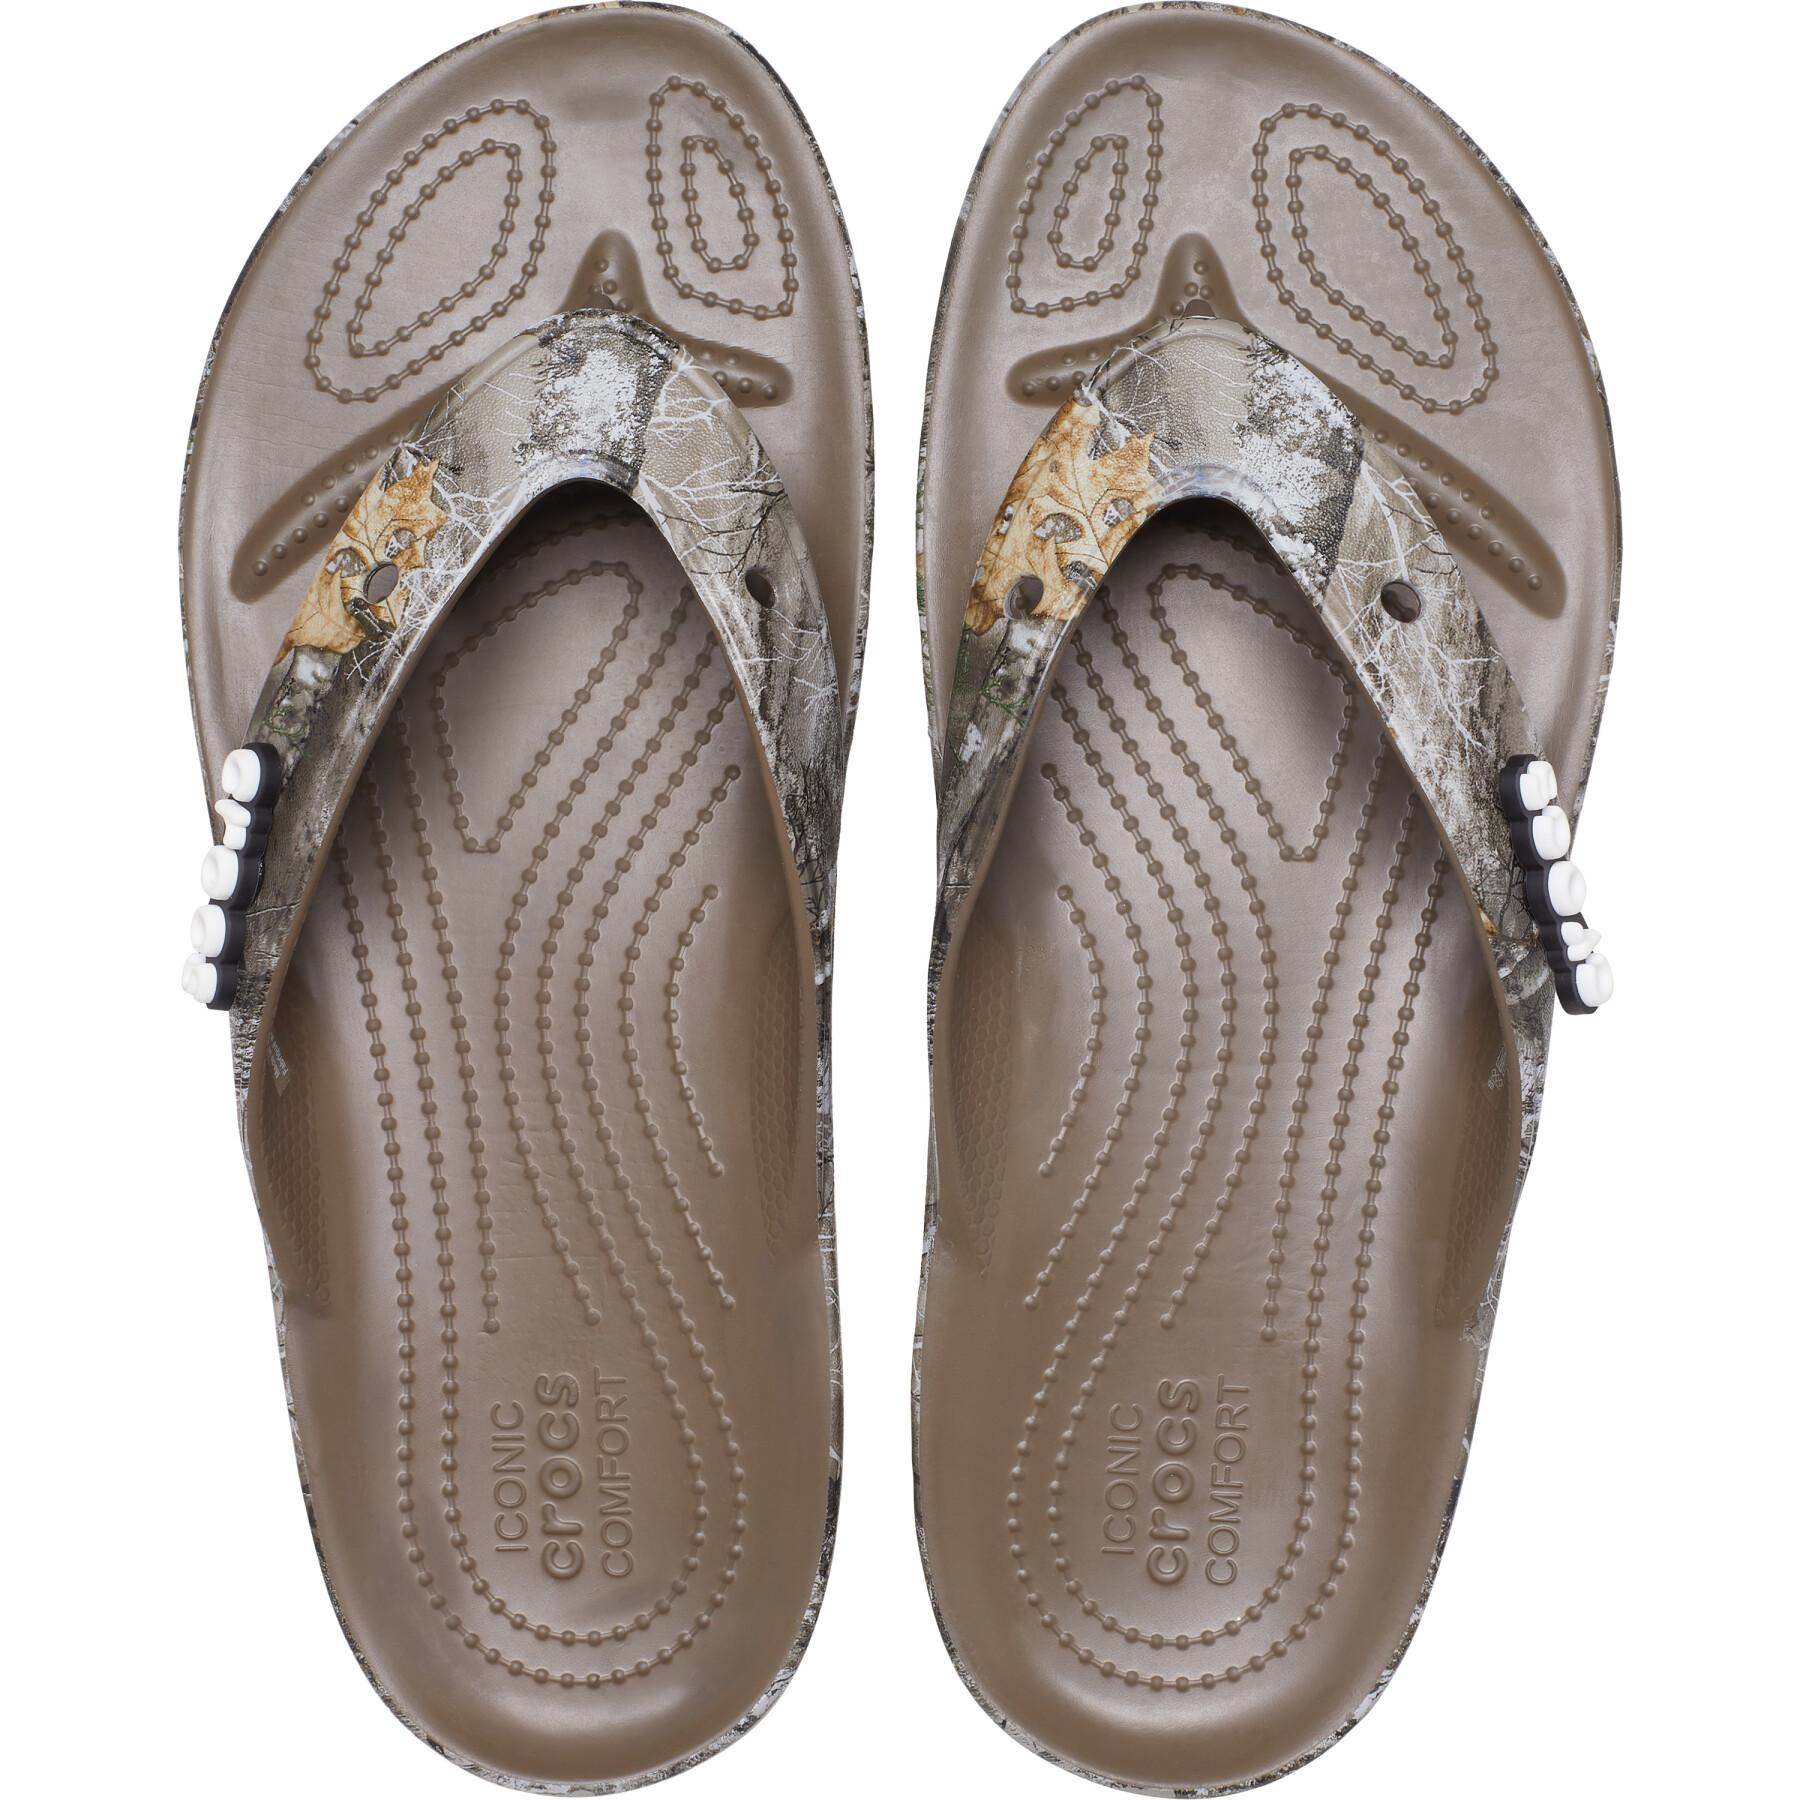 Children's flip-flops Crocs Realtree All Terrain